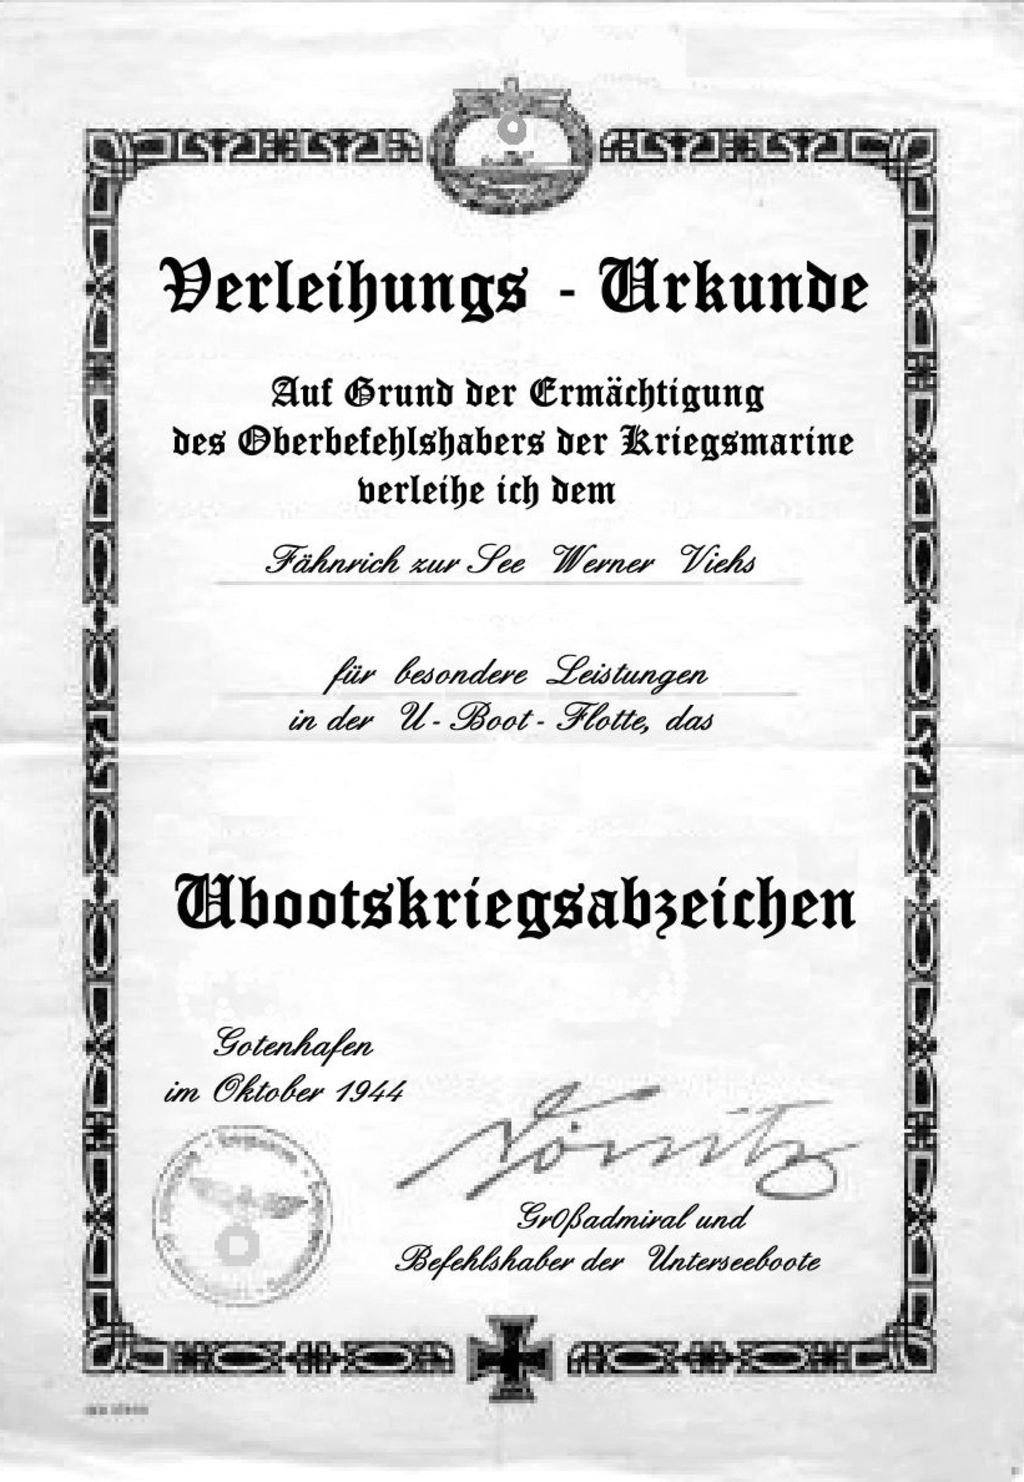 Exponat: okument: Urkunde zum Ubootskriegsabzeichen, 1944